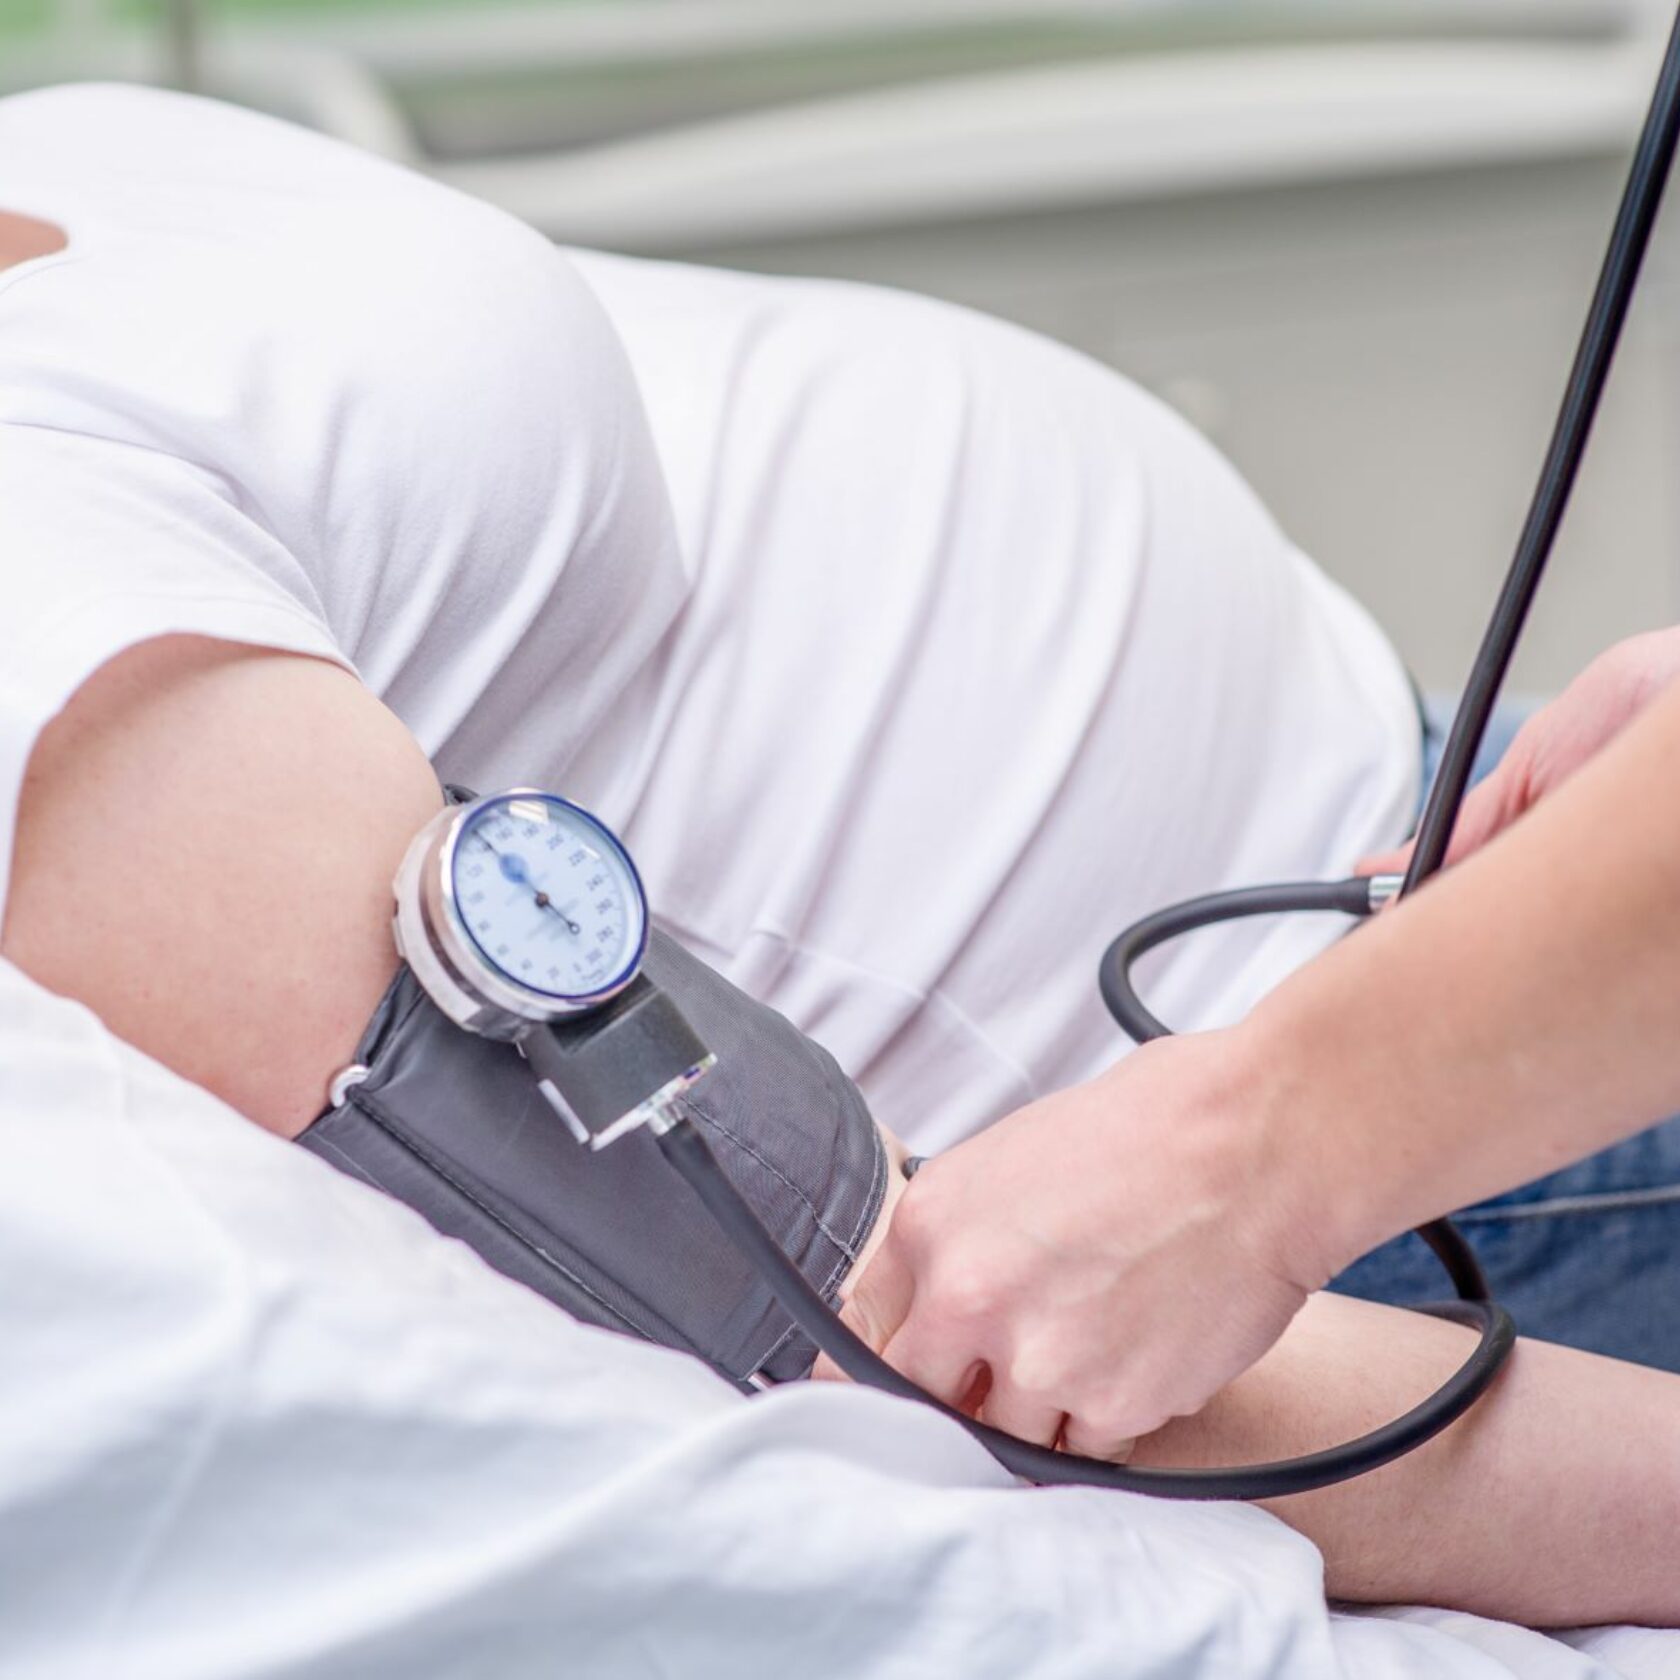 Frau in mittleren Schwangerschaftsmonaten beim Blutdruckmessen in einer Praxis